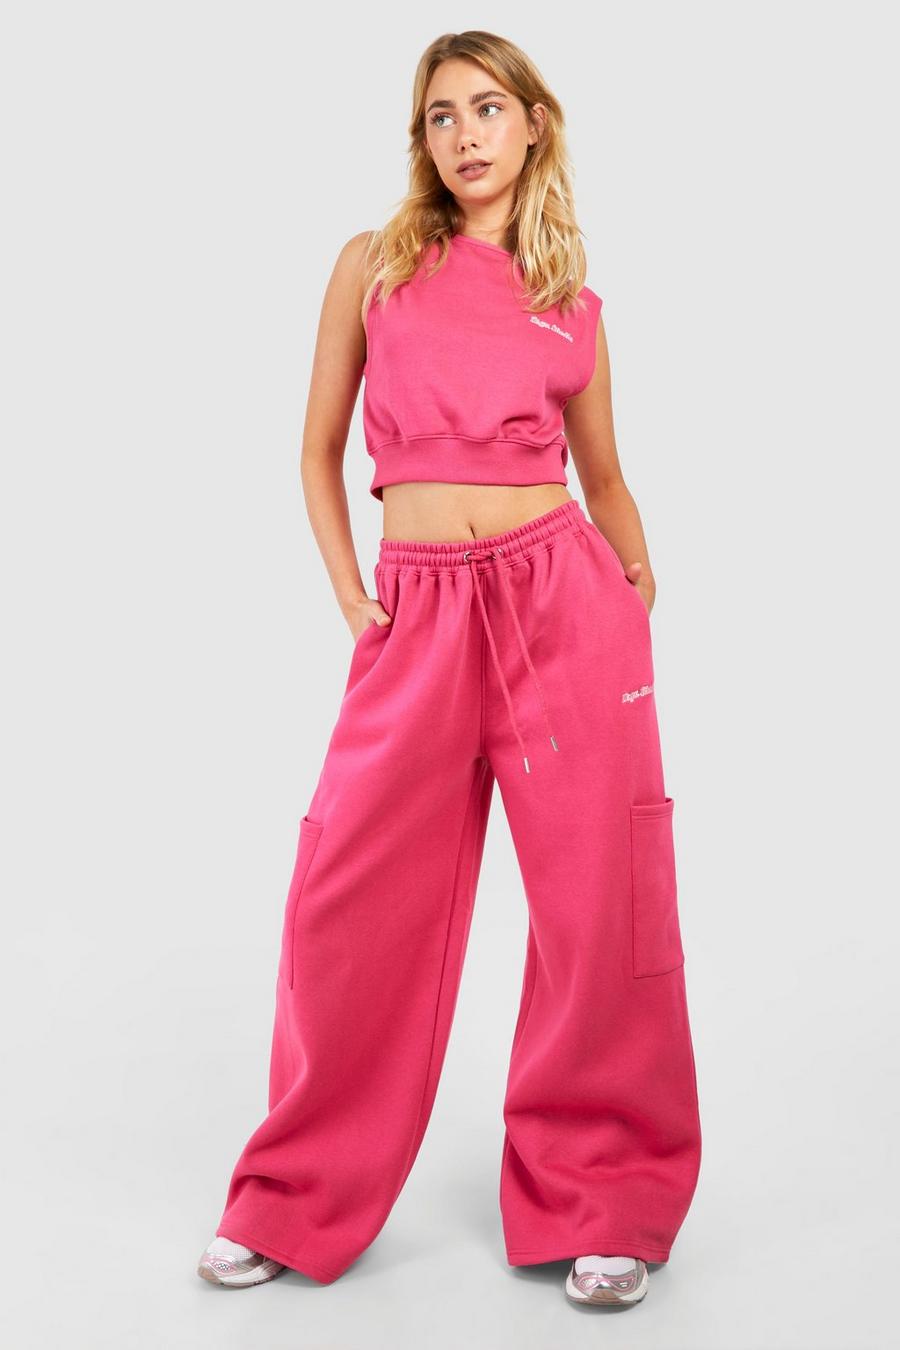 Pantaloni tuta Dsgn Studio con scritta Cargo e tasche Cargo, Hot pink image number 1